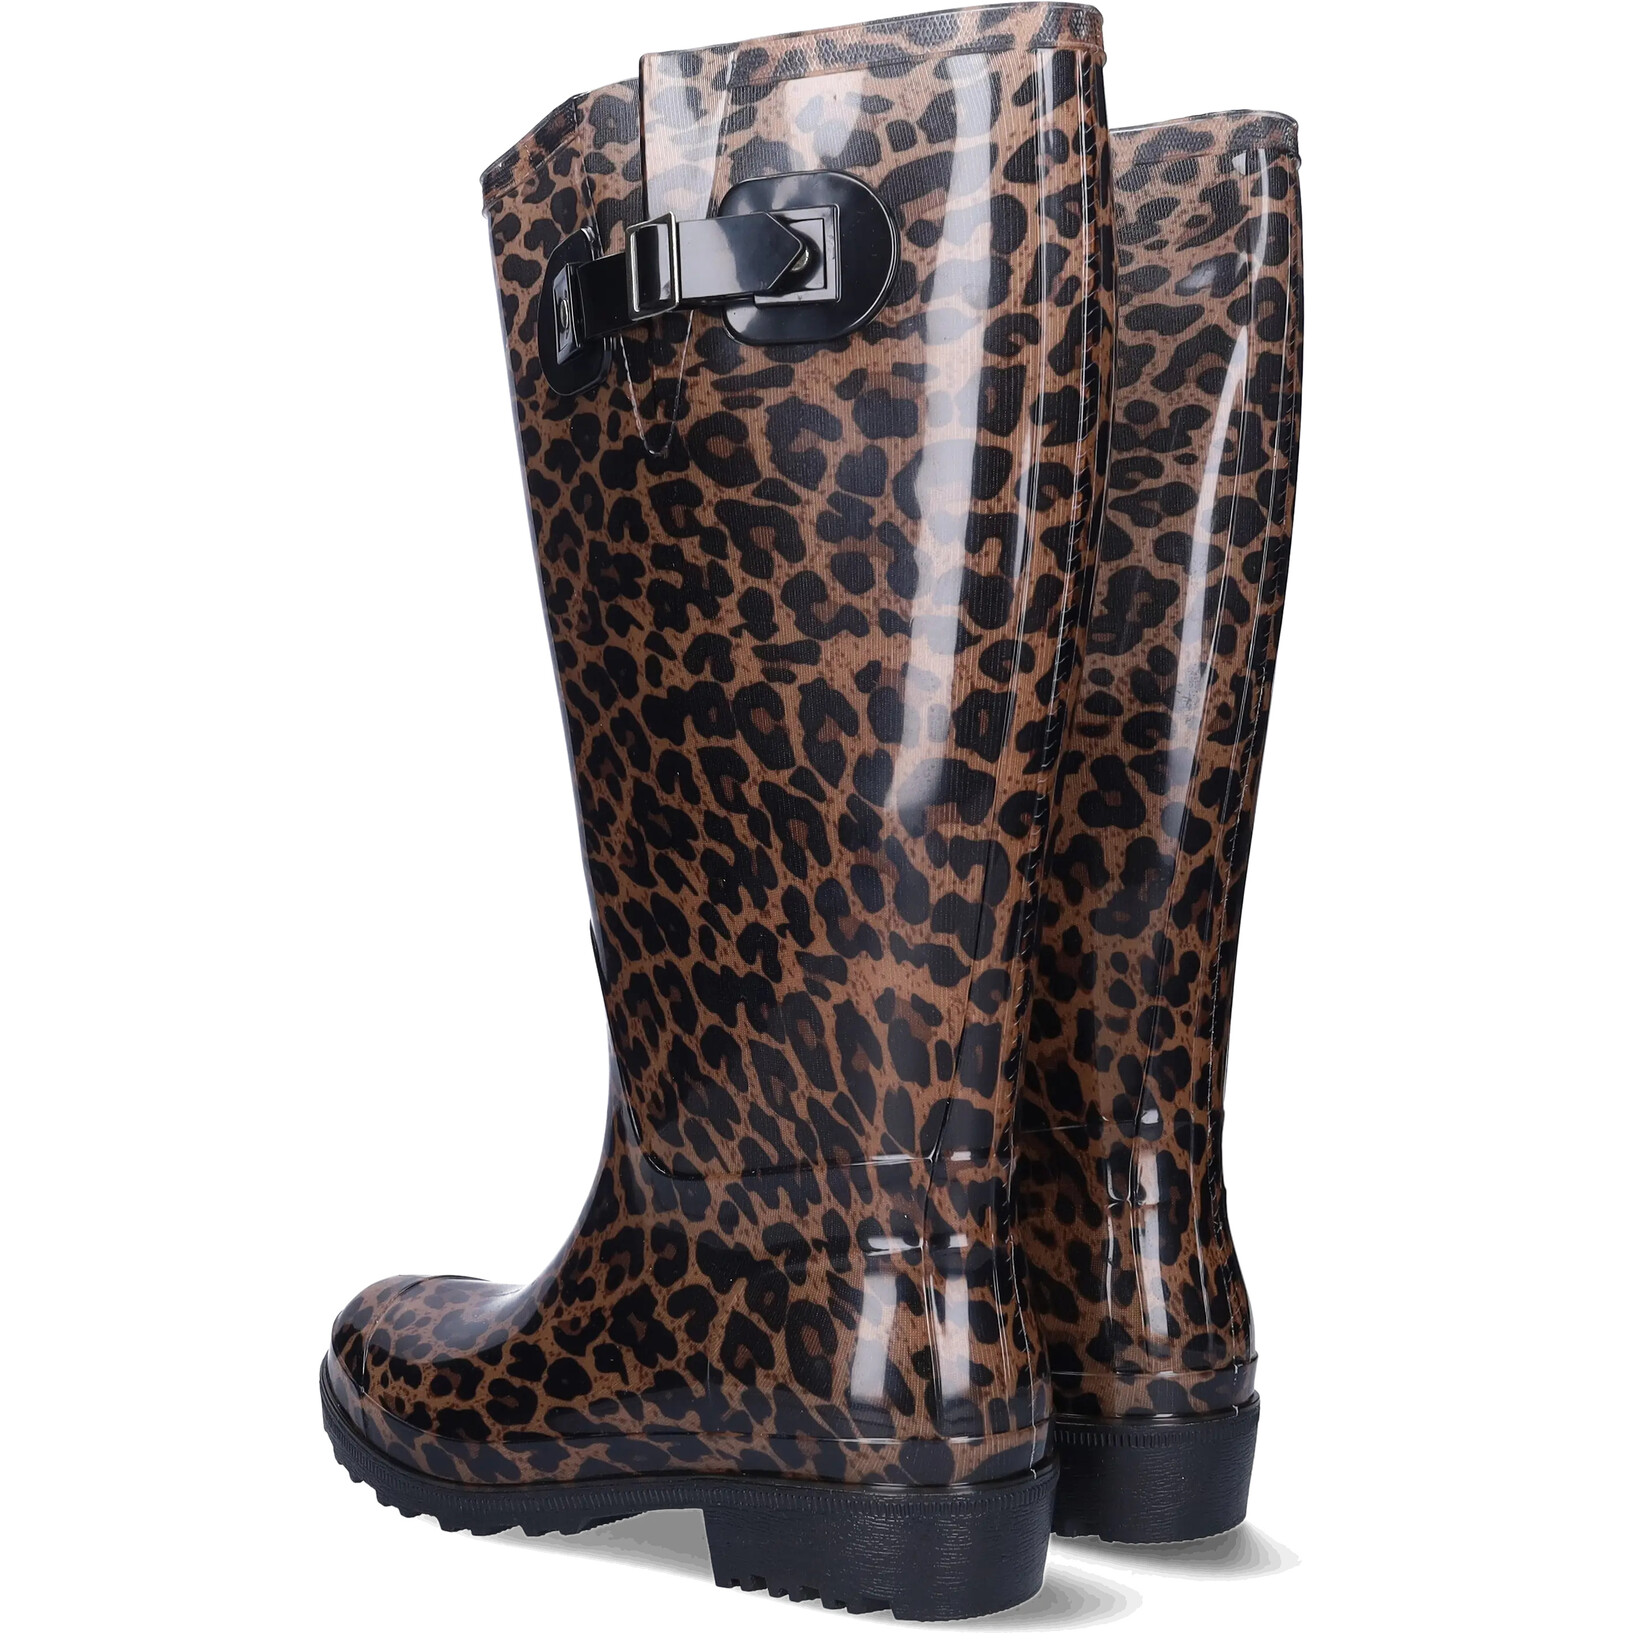 JJ Footwear Wellies - Braun/Beige Leopard